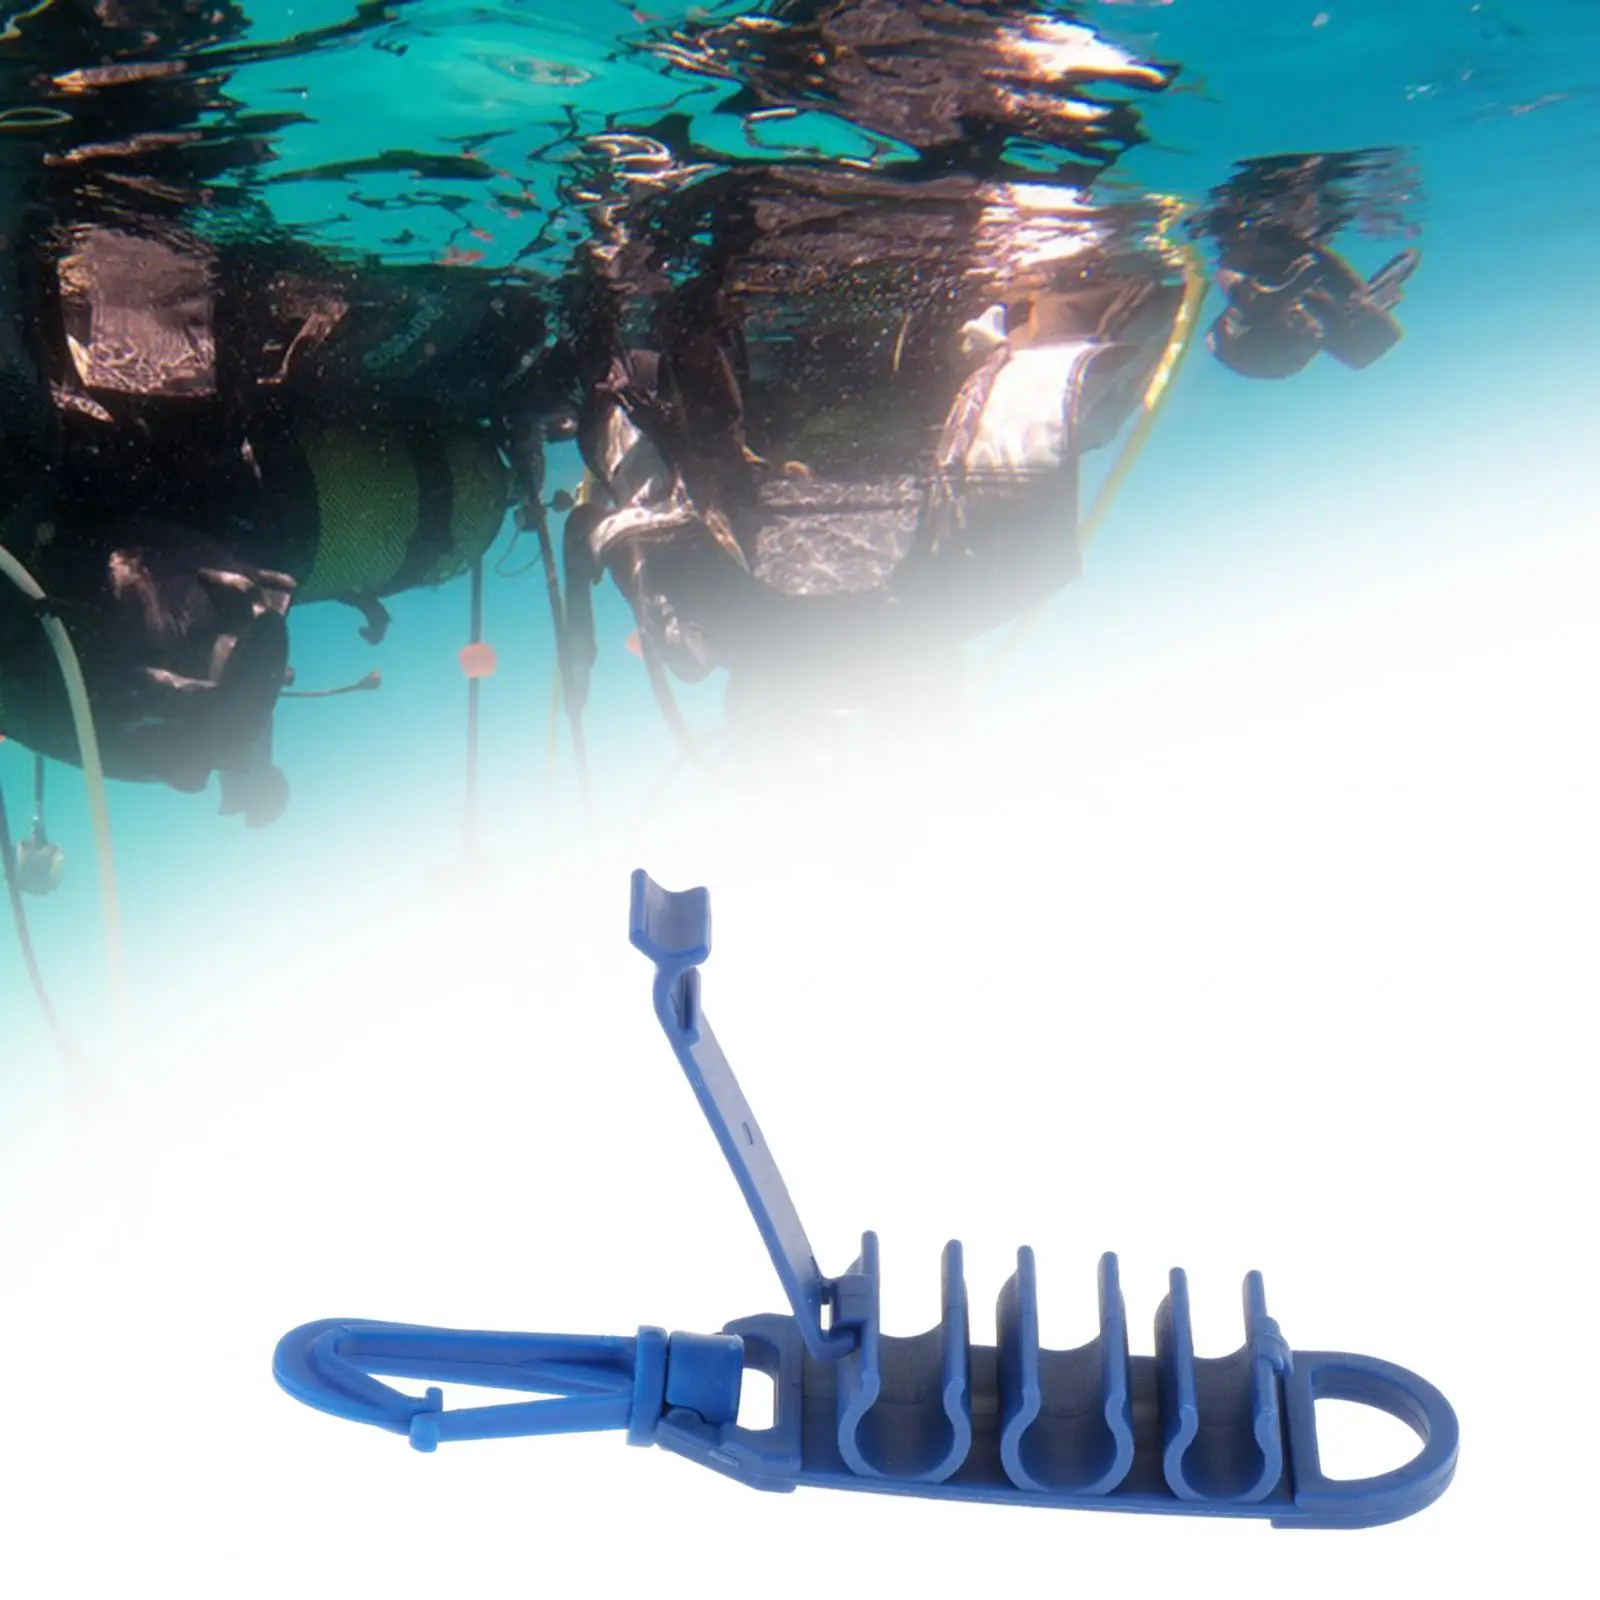 

Тройной держатель BCD для дайвинга, зажим для шланга для подводного плавания, зажим для снаряжения для подводного плавания, зажим для шланга BCD, для шланга 9/16 дюйма и шланга 1/2 дюйма